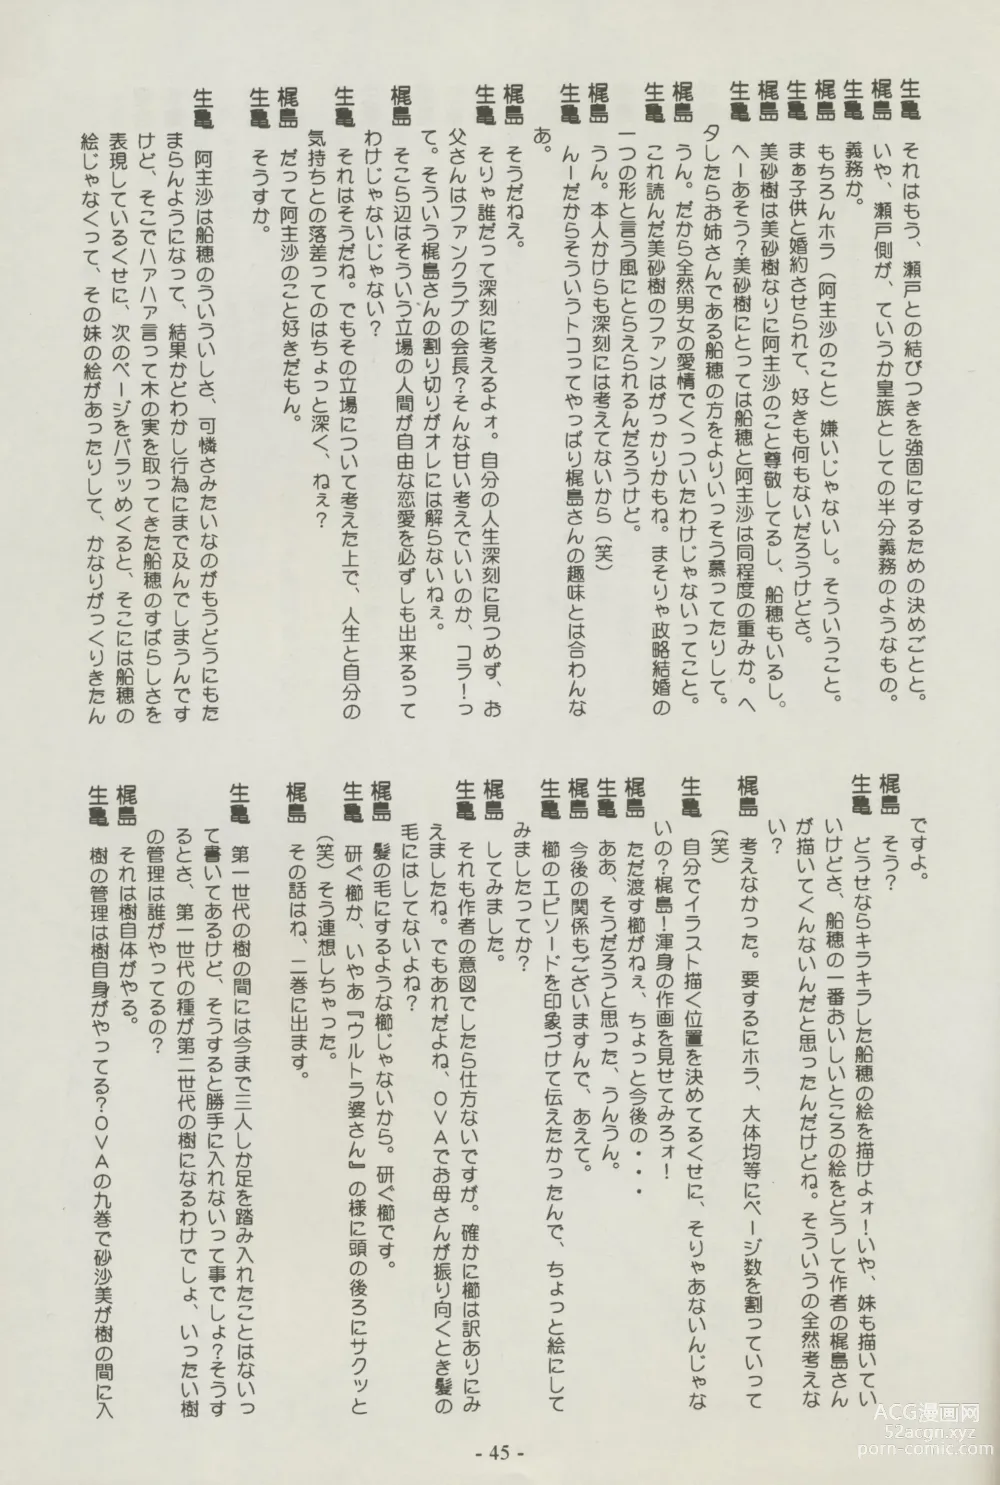 Page 45 of doujinshi Shuppanroku